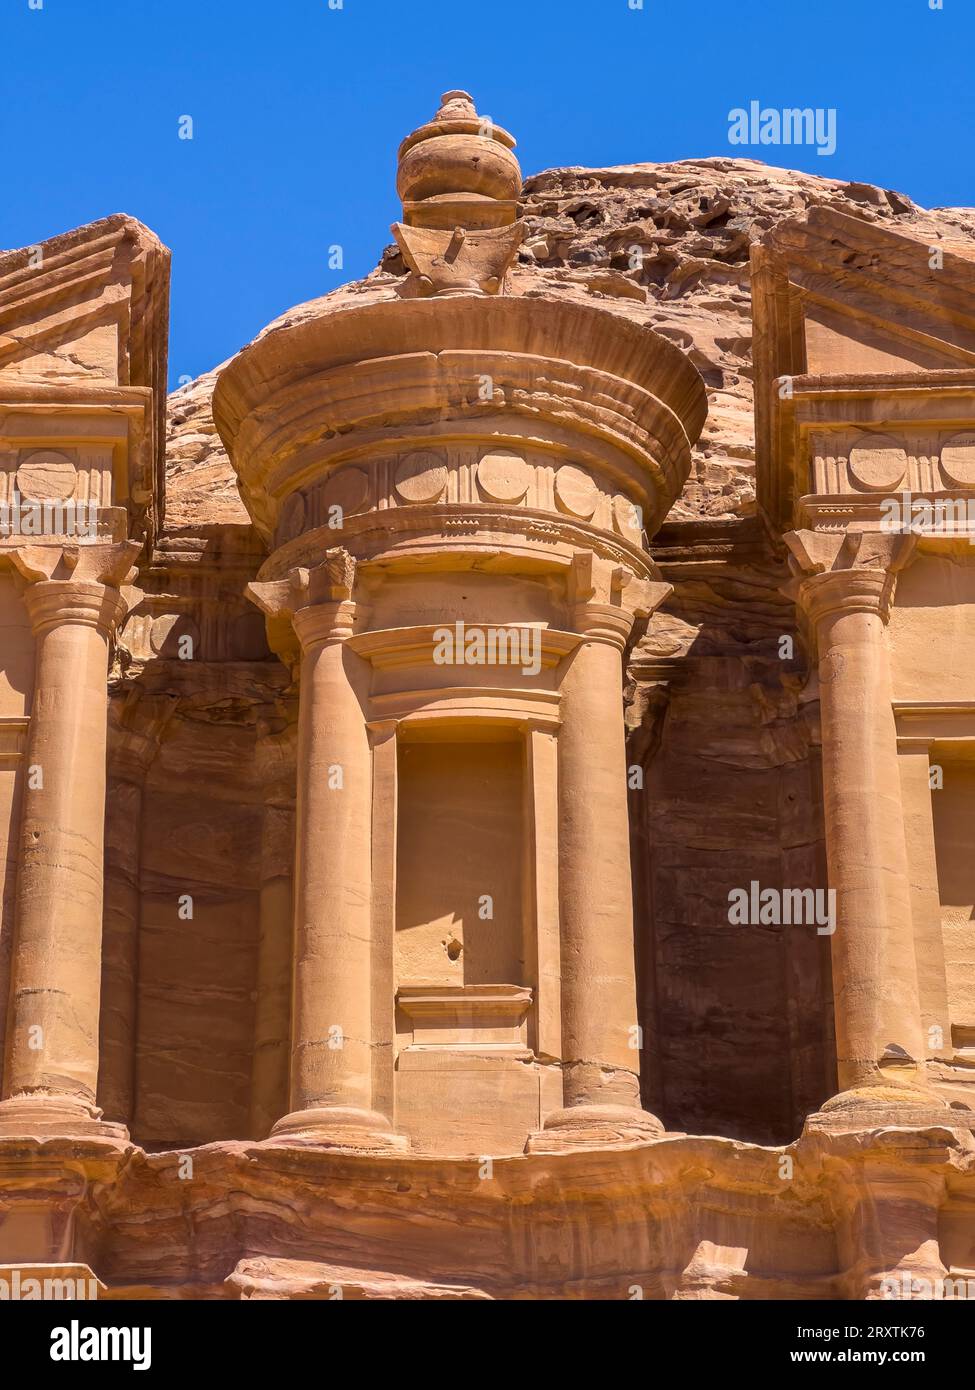 Il monastero di Petra (al Dayr), il parco archeologico di Petra, sito patrimonio dell'umanità dell'UNESCO, una delle nuove sette meraviglie del mondo, Petra, Giordania Foto Stock